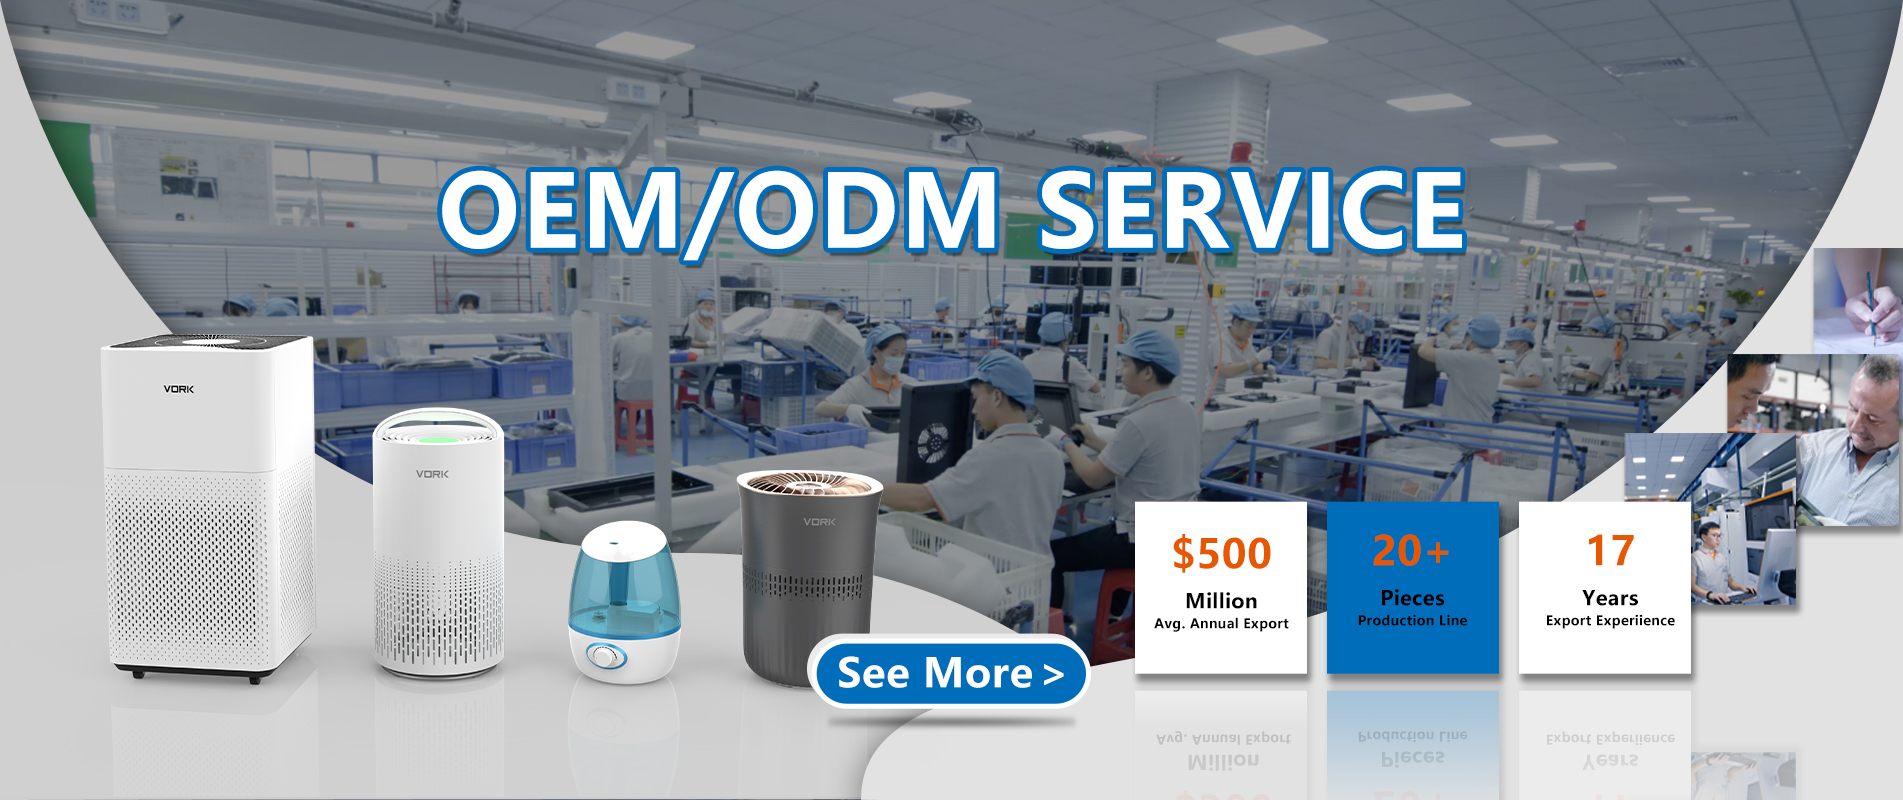 OEM/odm service